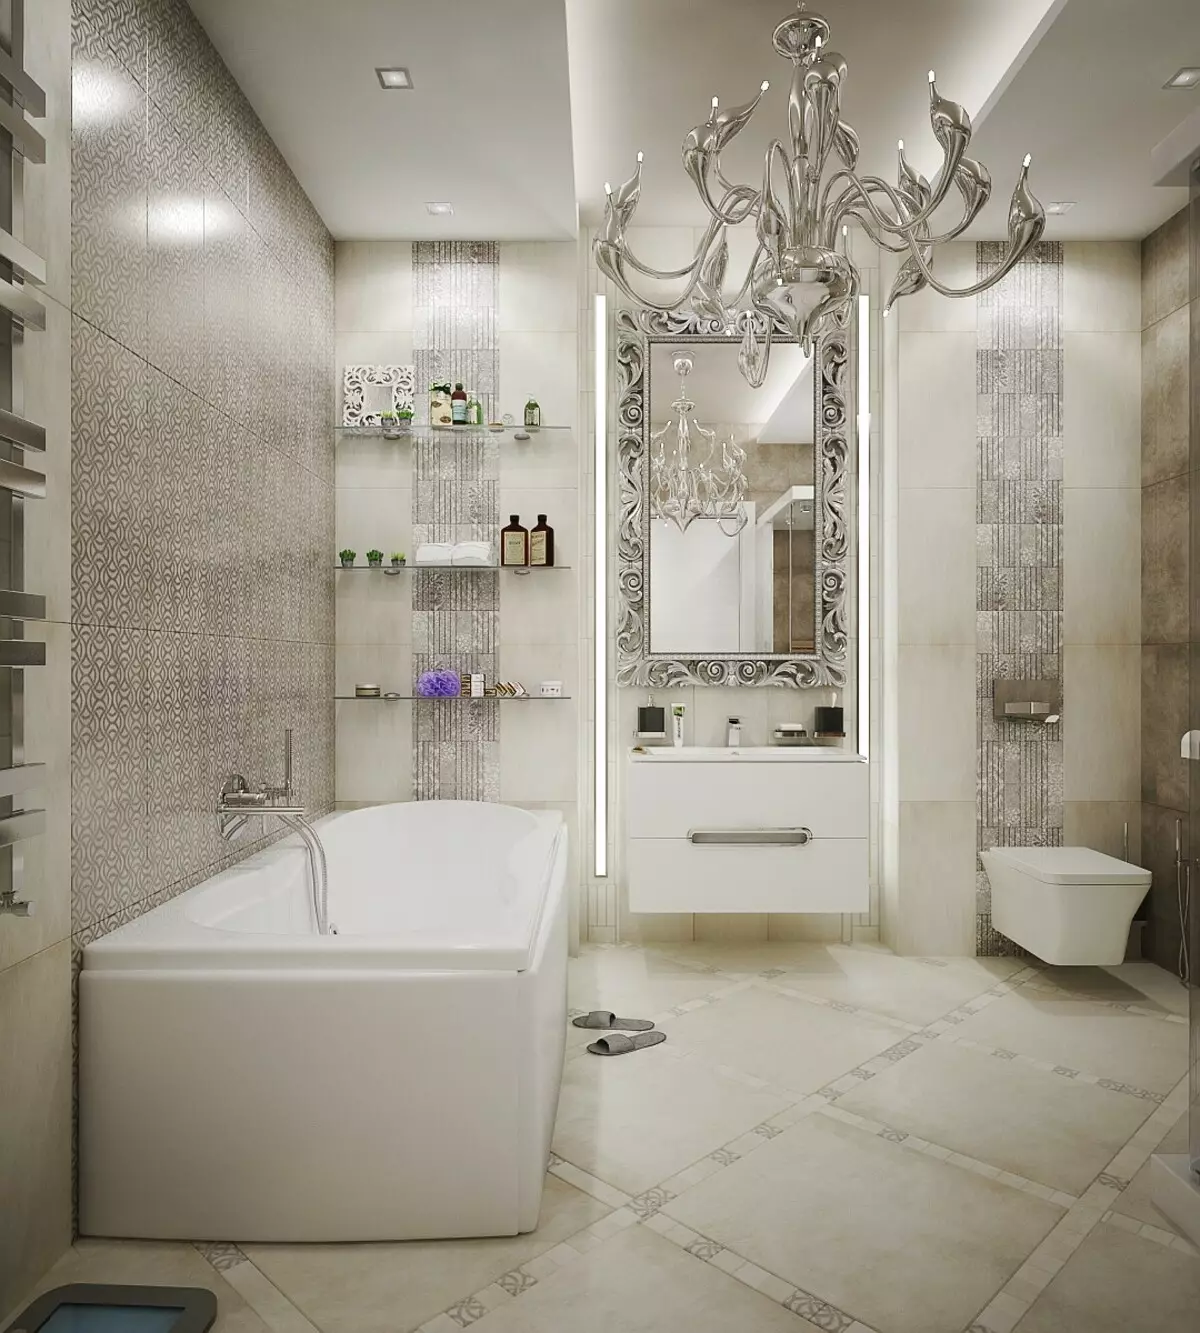 Salle de bain blanche (84 photos): design de chambre dans des tons blancs avec des accents lumineux. Idées de design d'intérieur modernes Petite salle de bain blanche avec inserts 10191_66